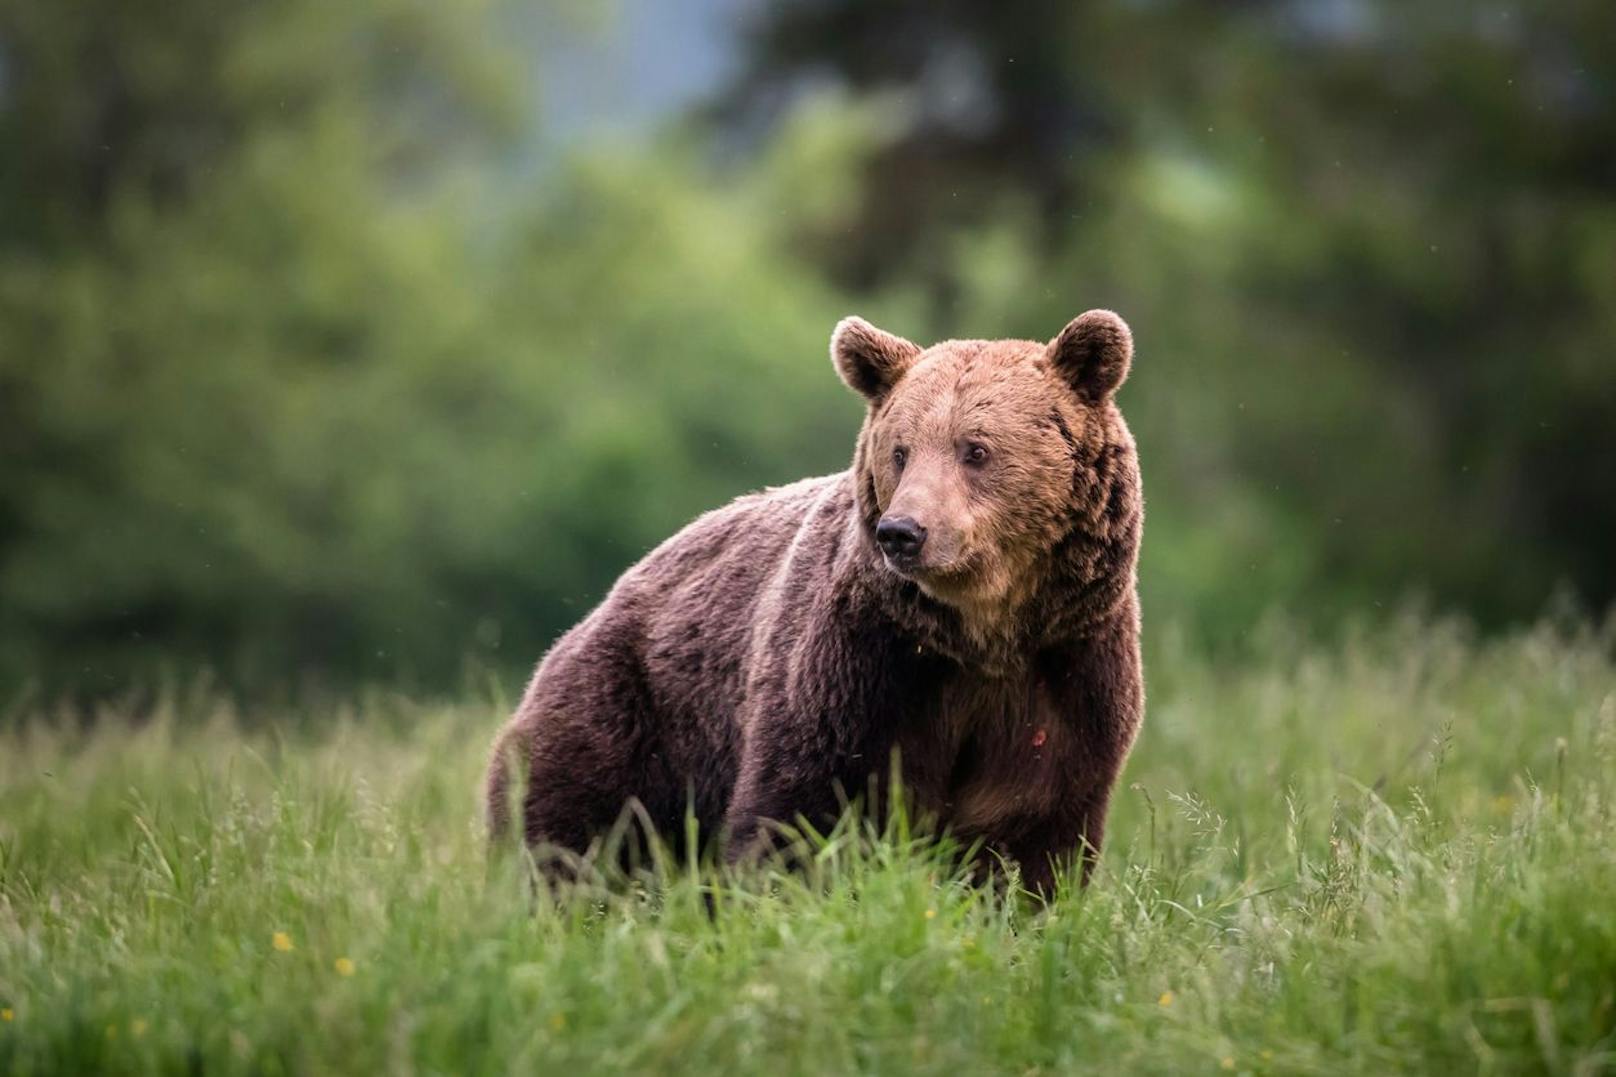 Nächster Angriff: Bär verletzte 2 Menschen in Slowakei